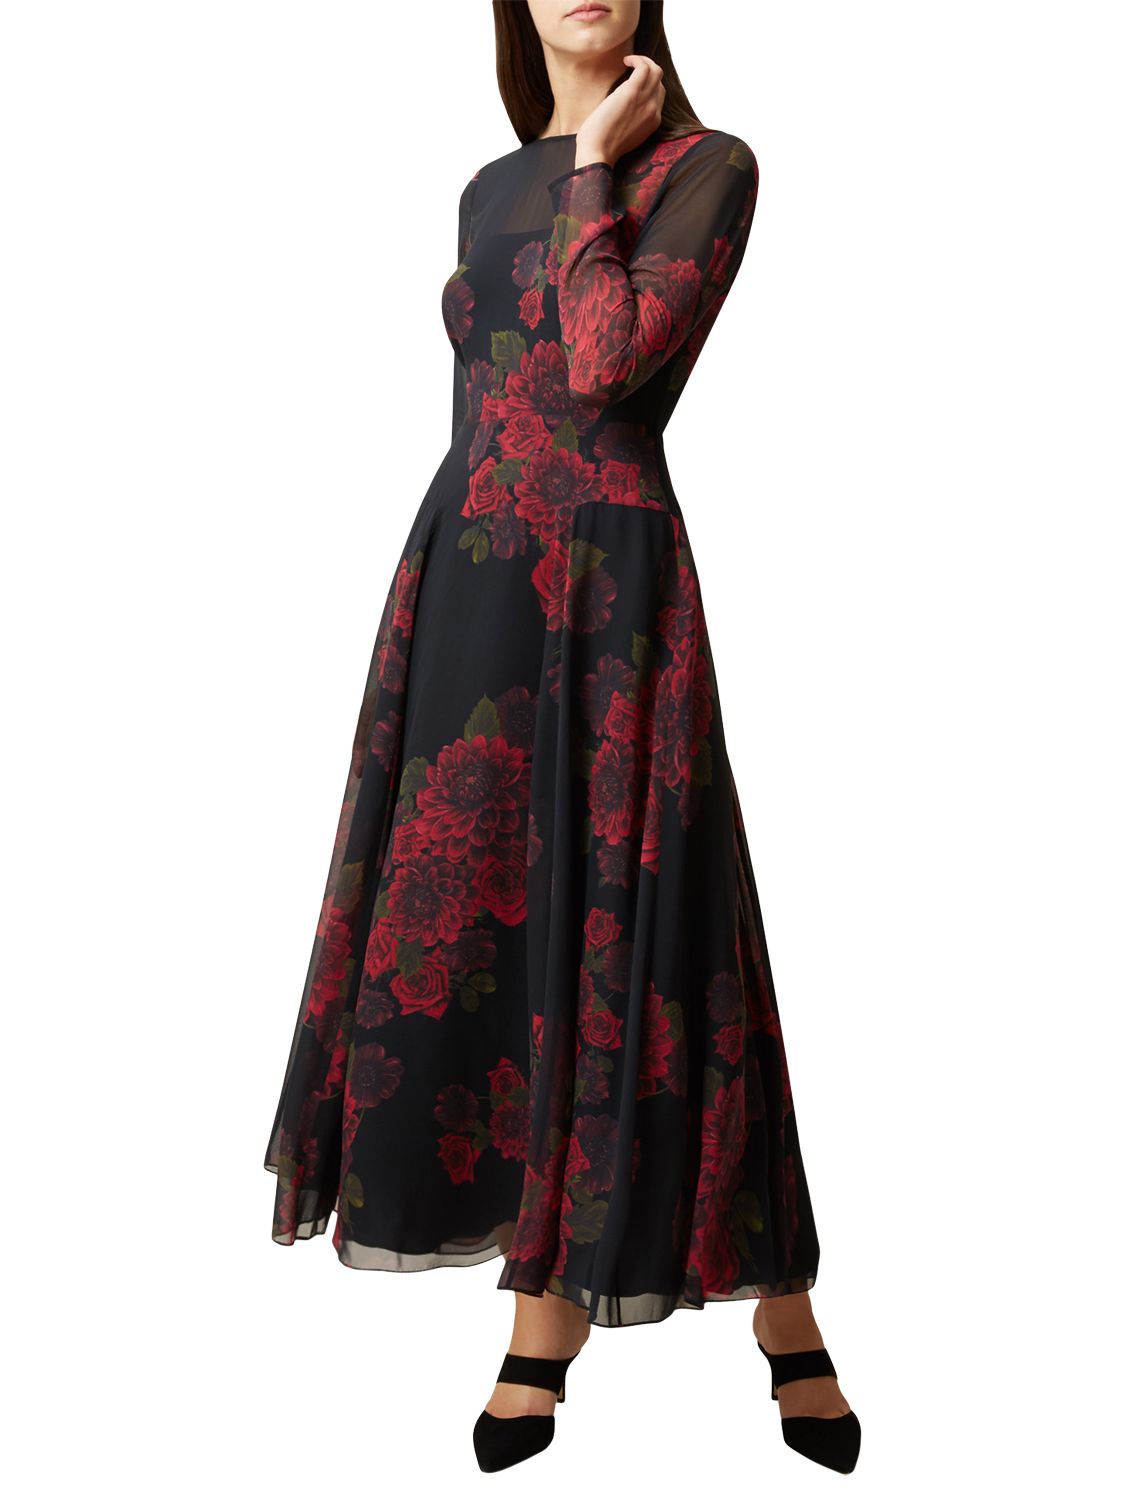 Hobbs Silk Rose Dress, Black/Red | 6 at John Lewis